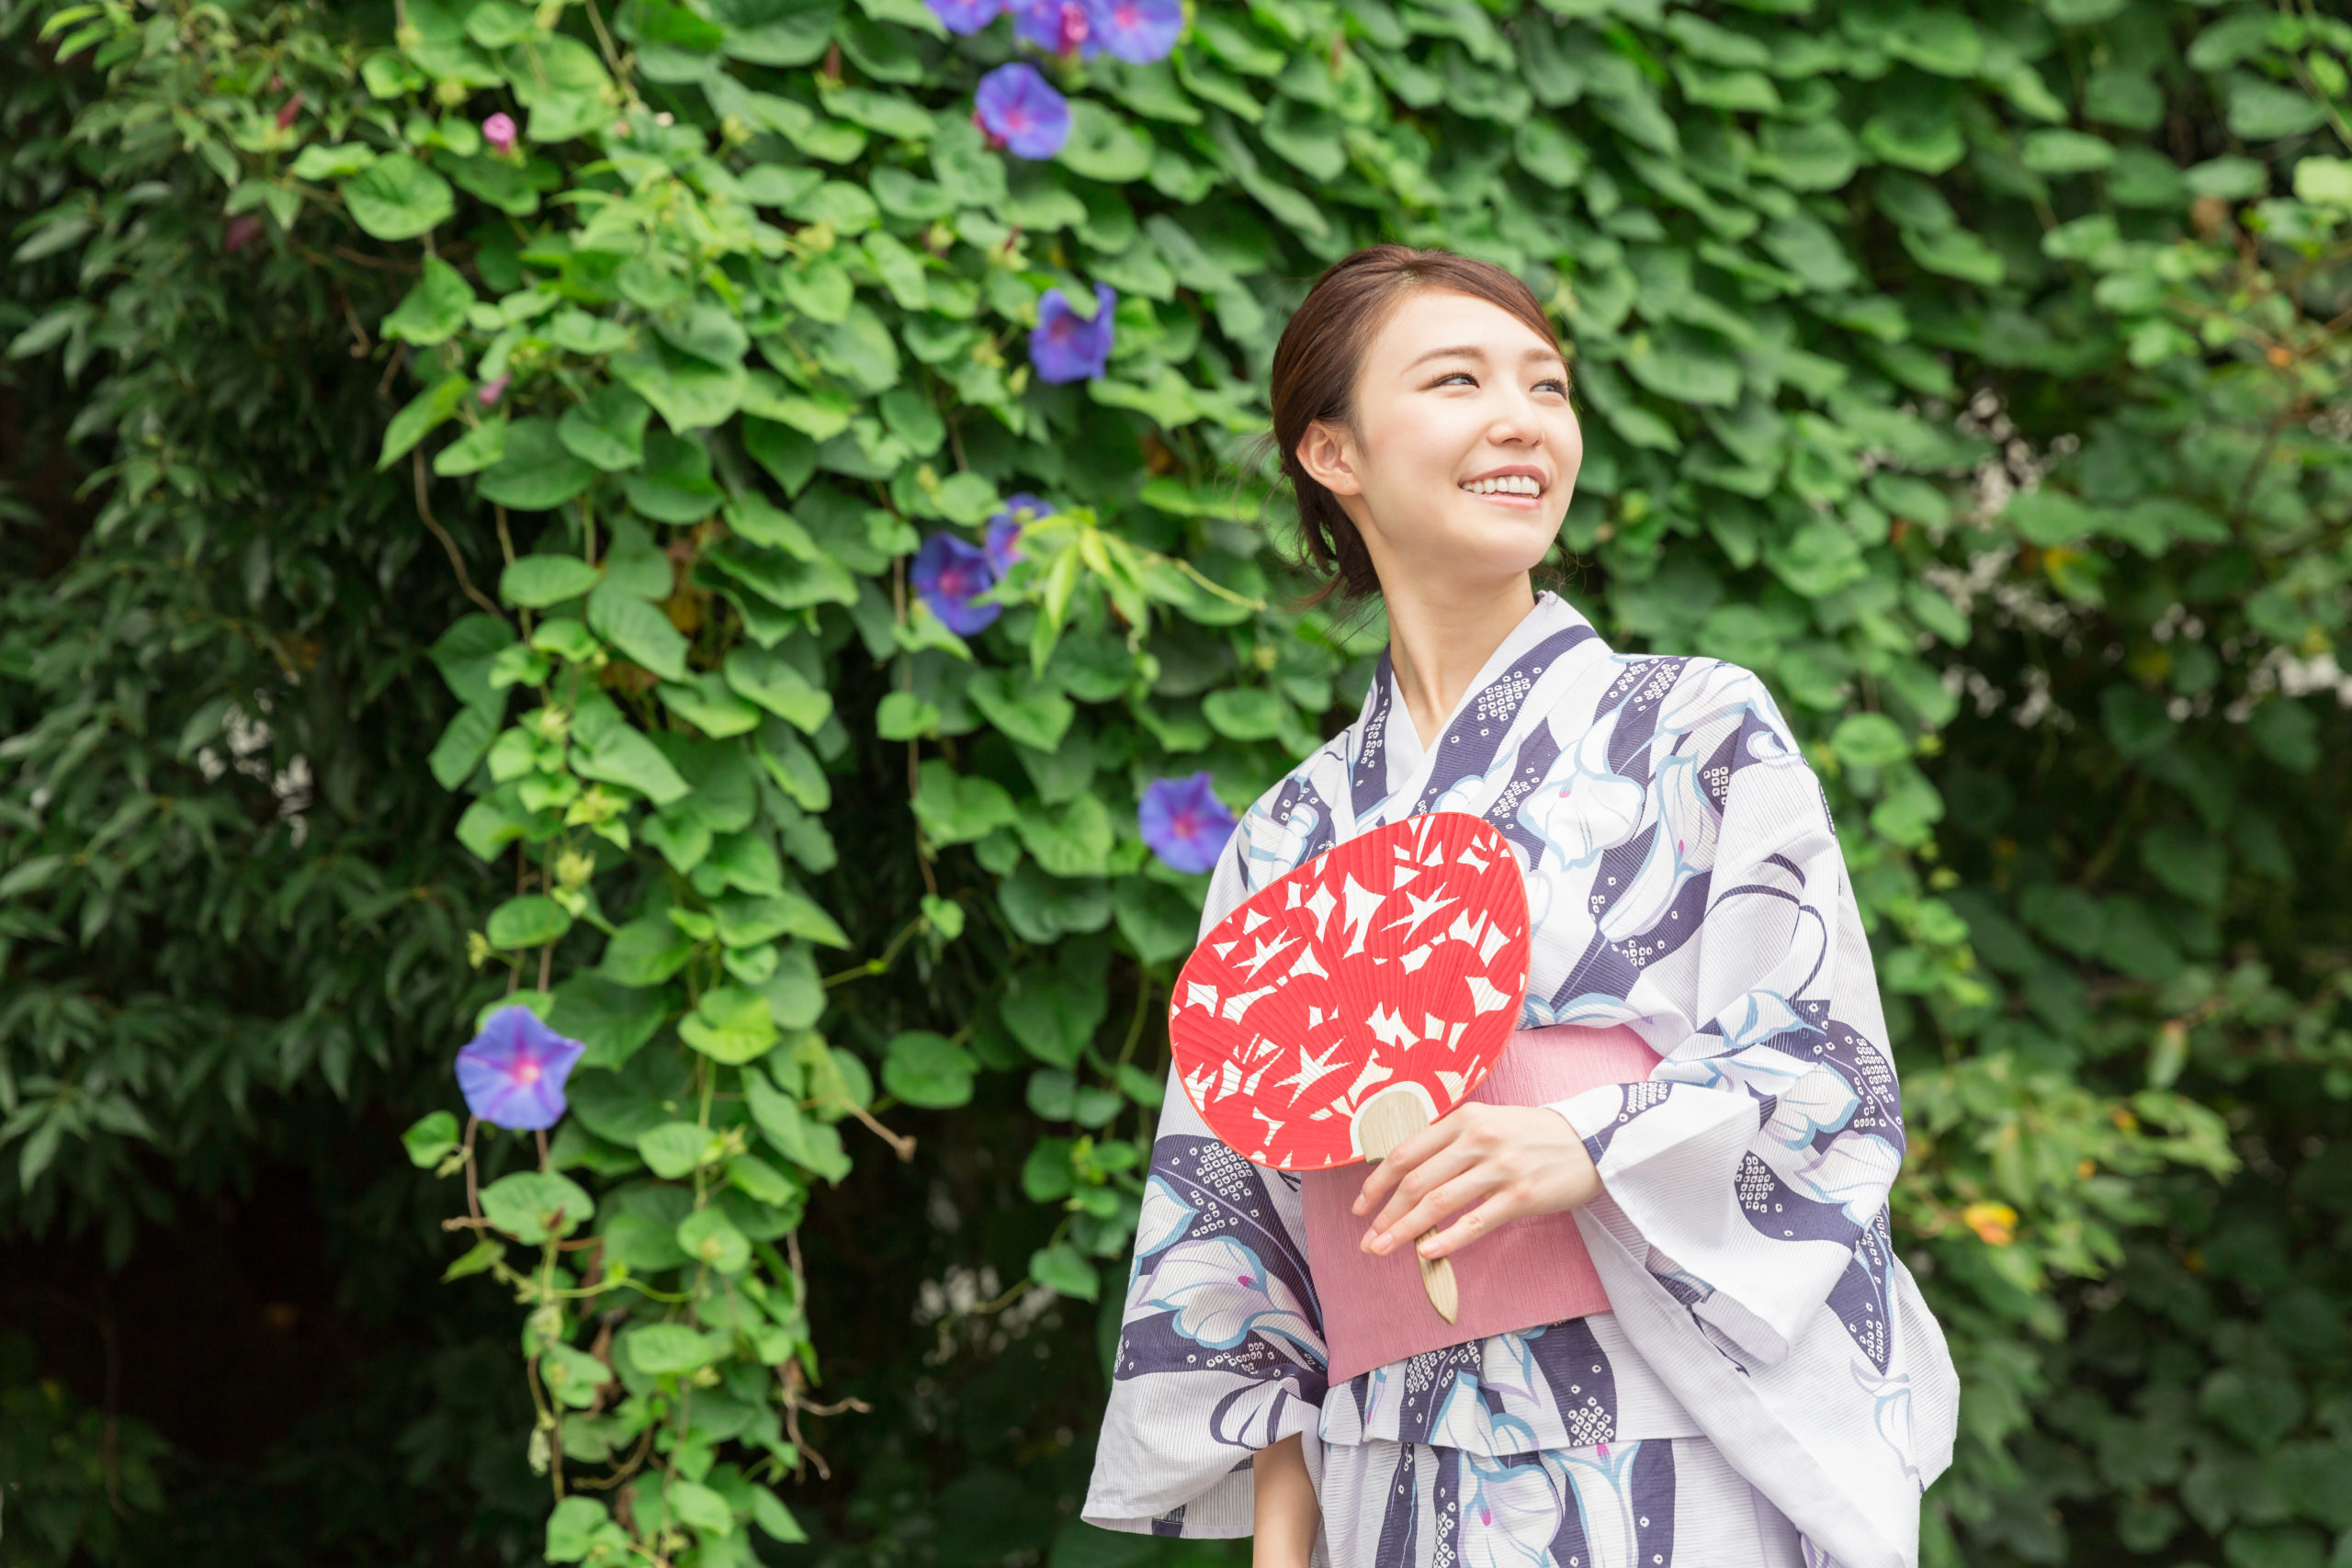 A woman in yukata holding a fan